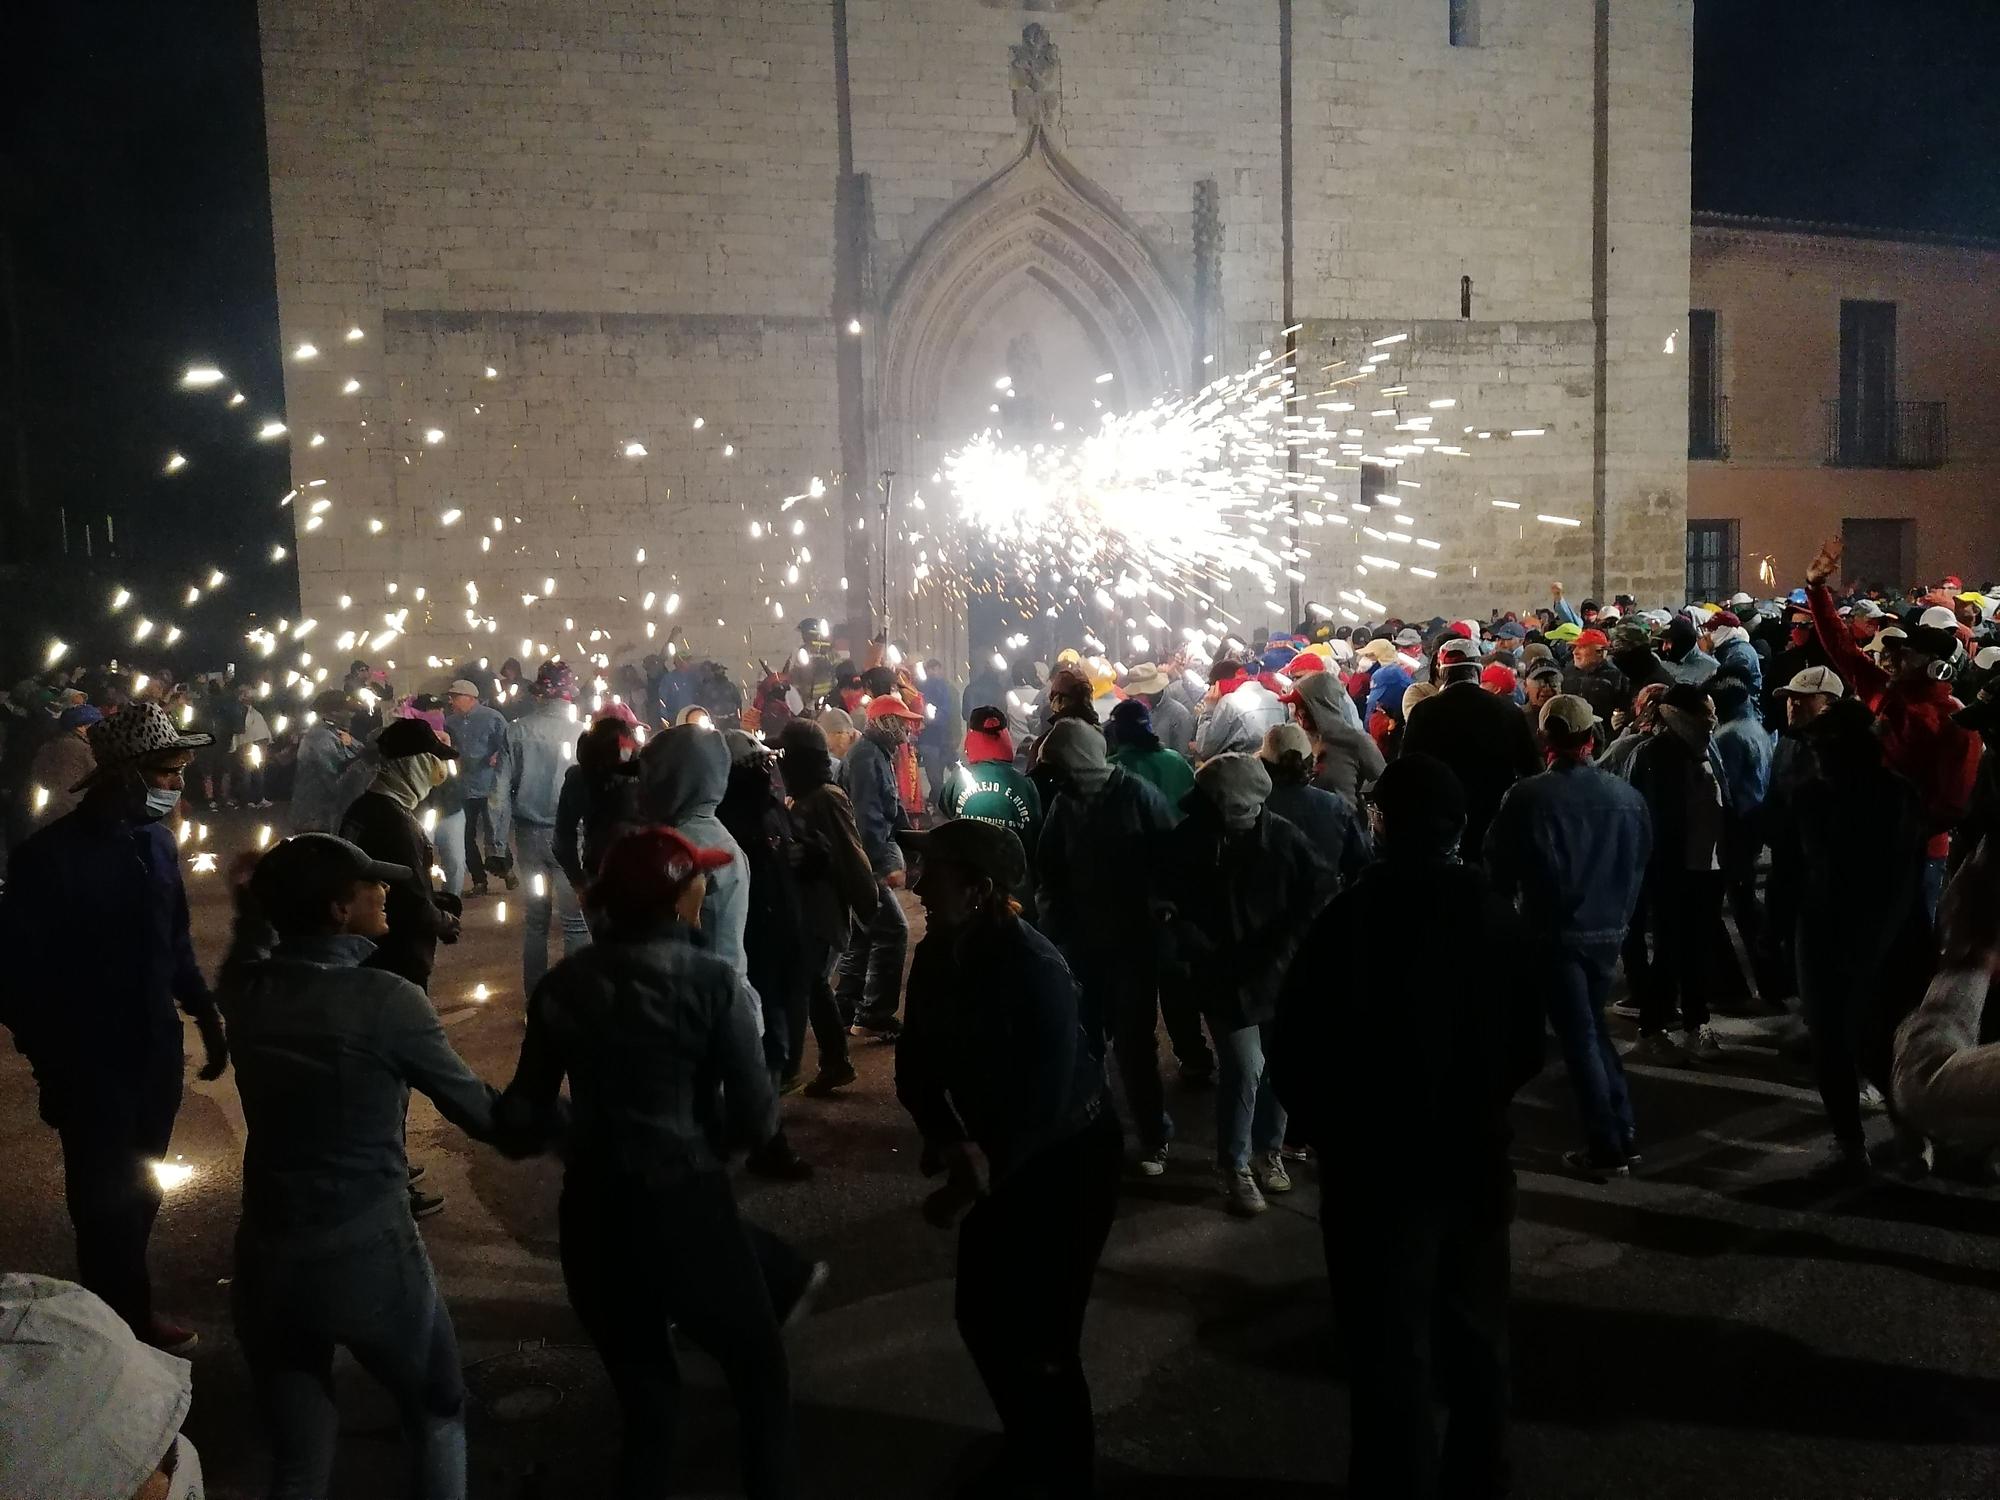 GALERÍA | El fuego prende la traca final de las fiestas en Toro